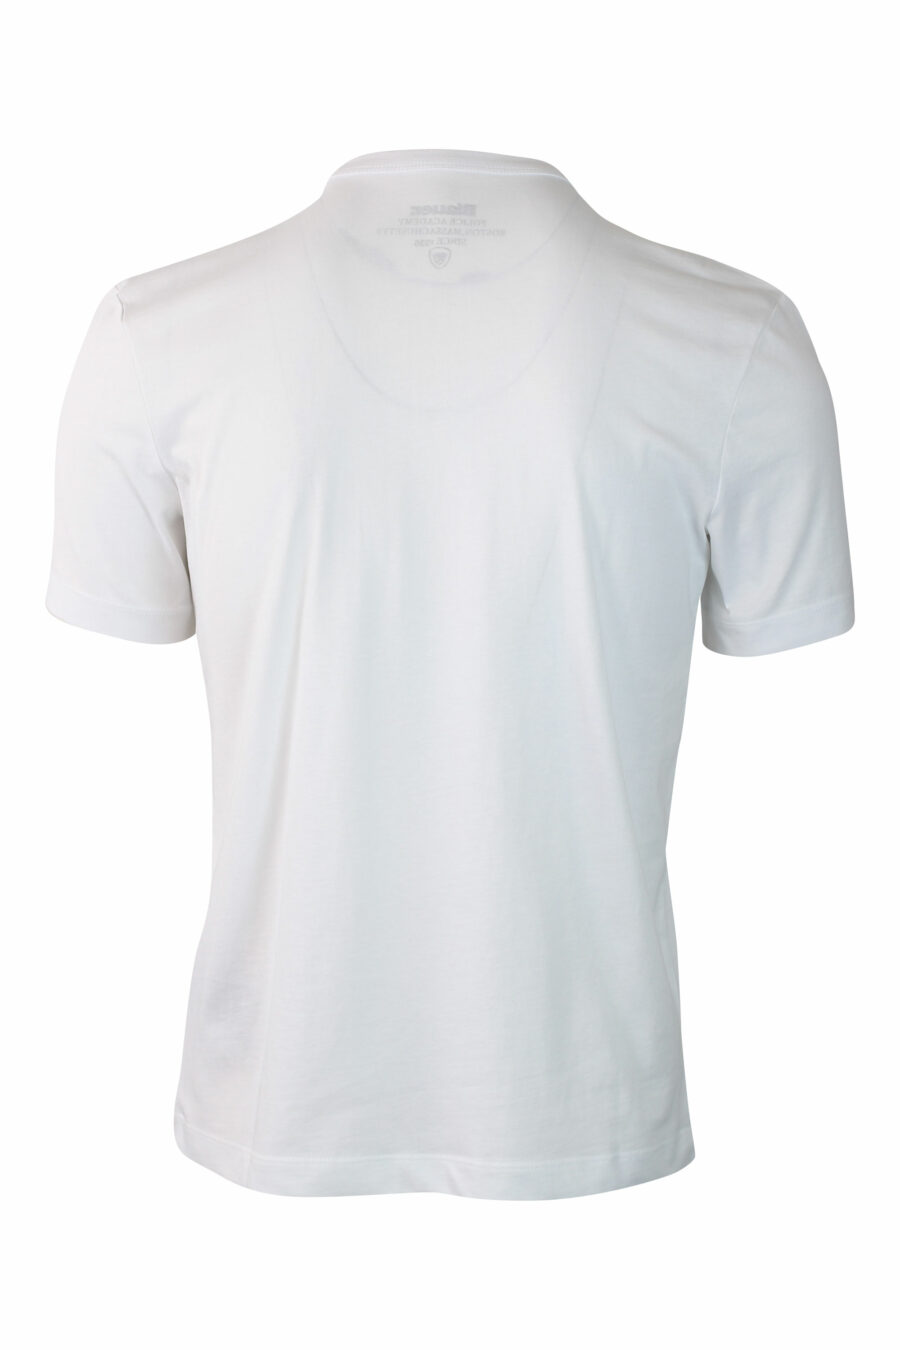 Camiseta blanca con minilogo escudo - IMG 0123